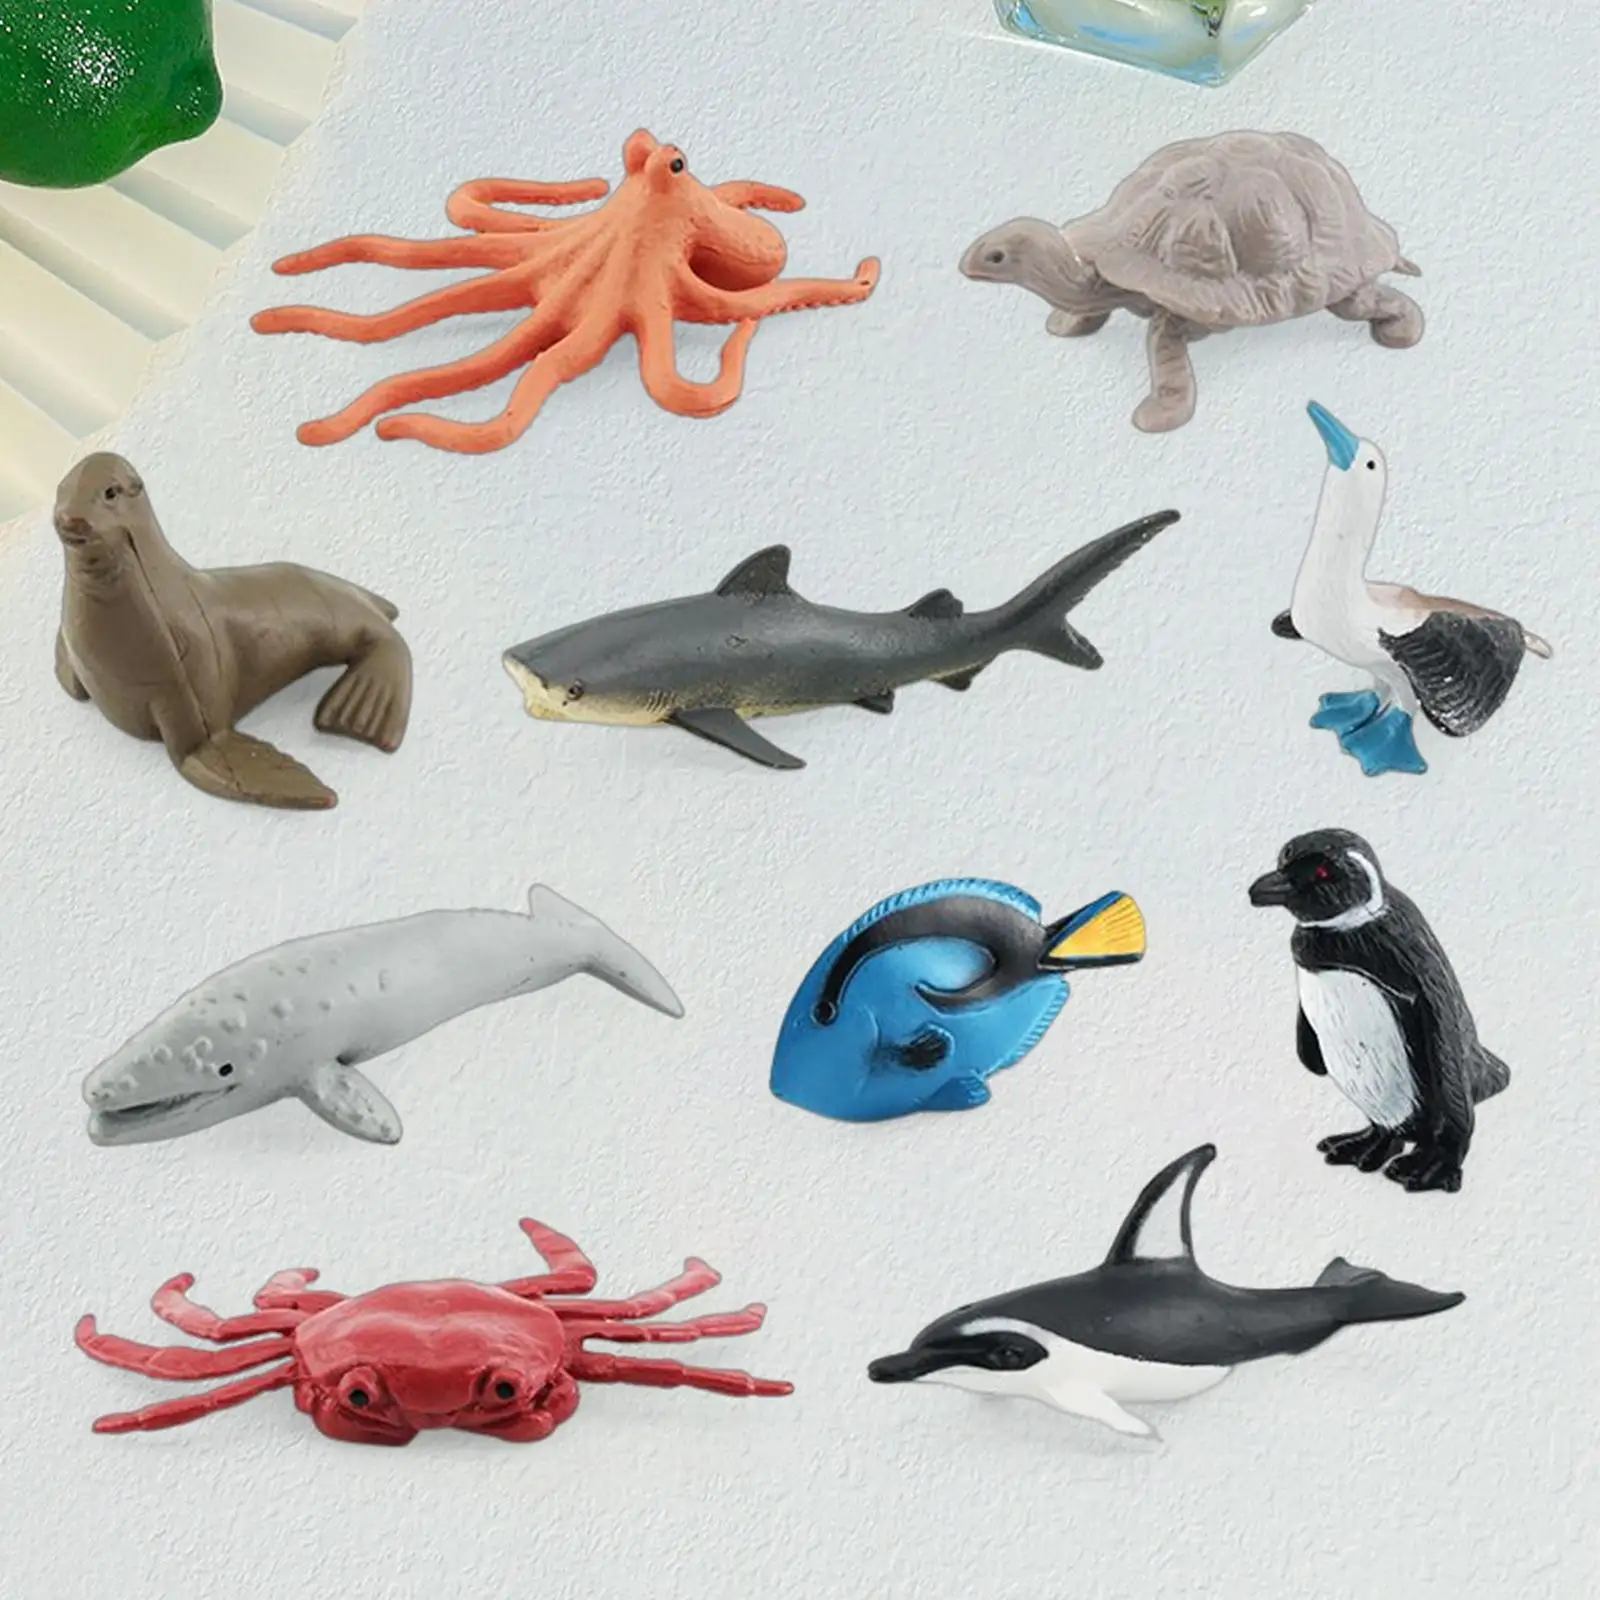 10Pcs Lifelike Marine Animal Figurines Kids Mini Figurines Models for Gifts